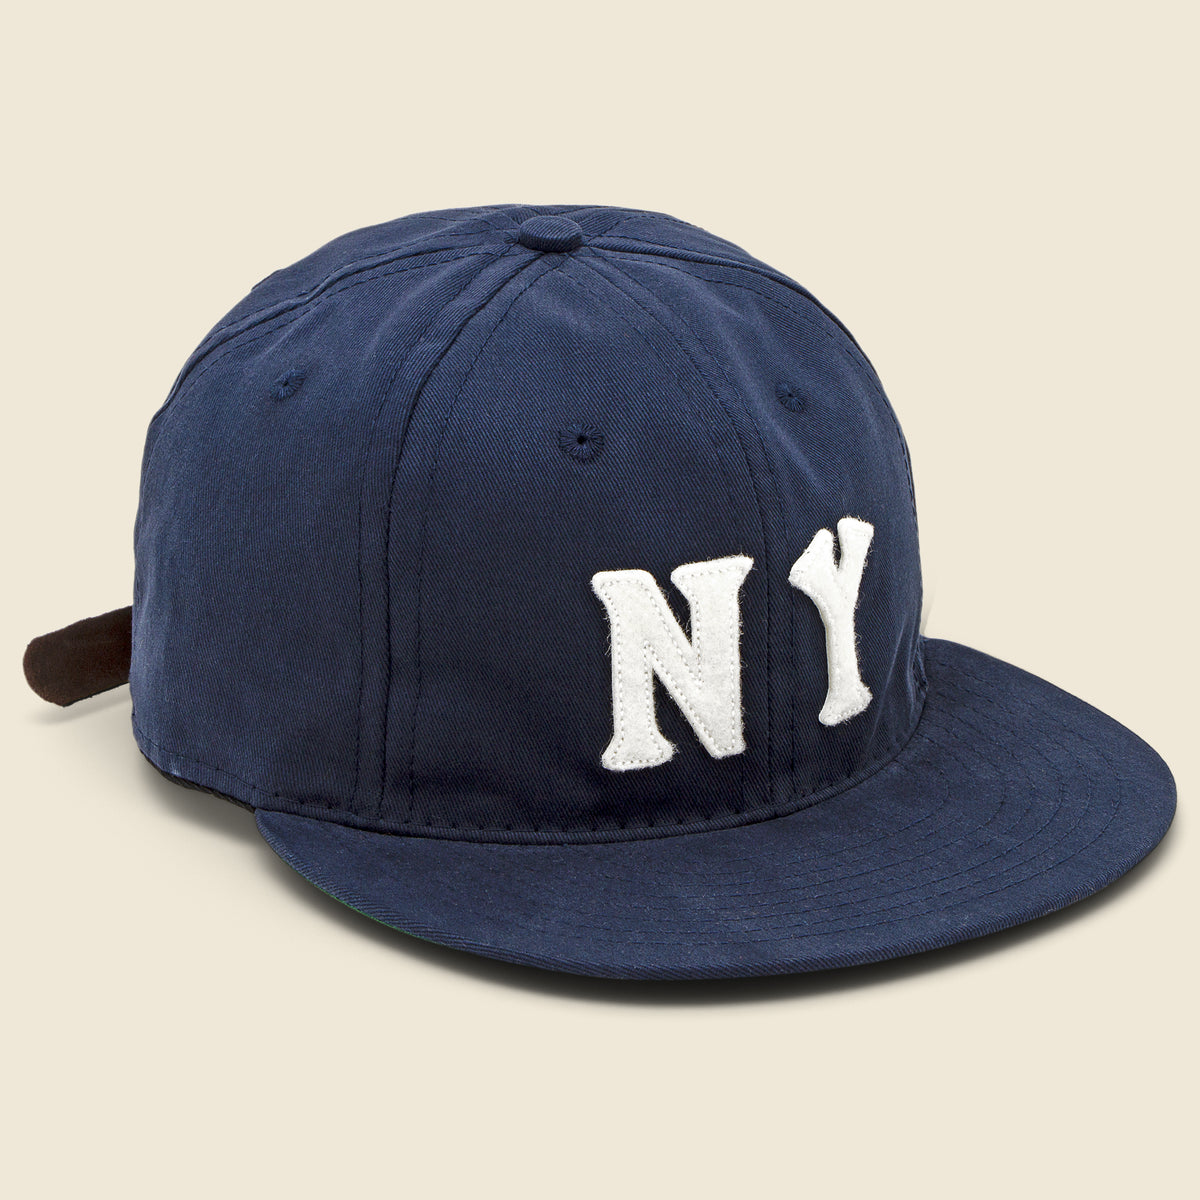 Yankees cap, Ralph Lauren cap, navy blue color cap